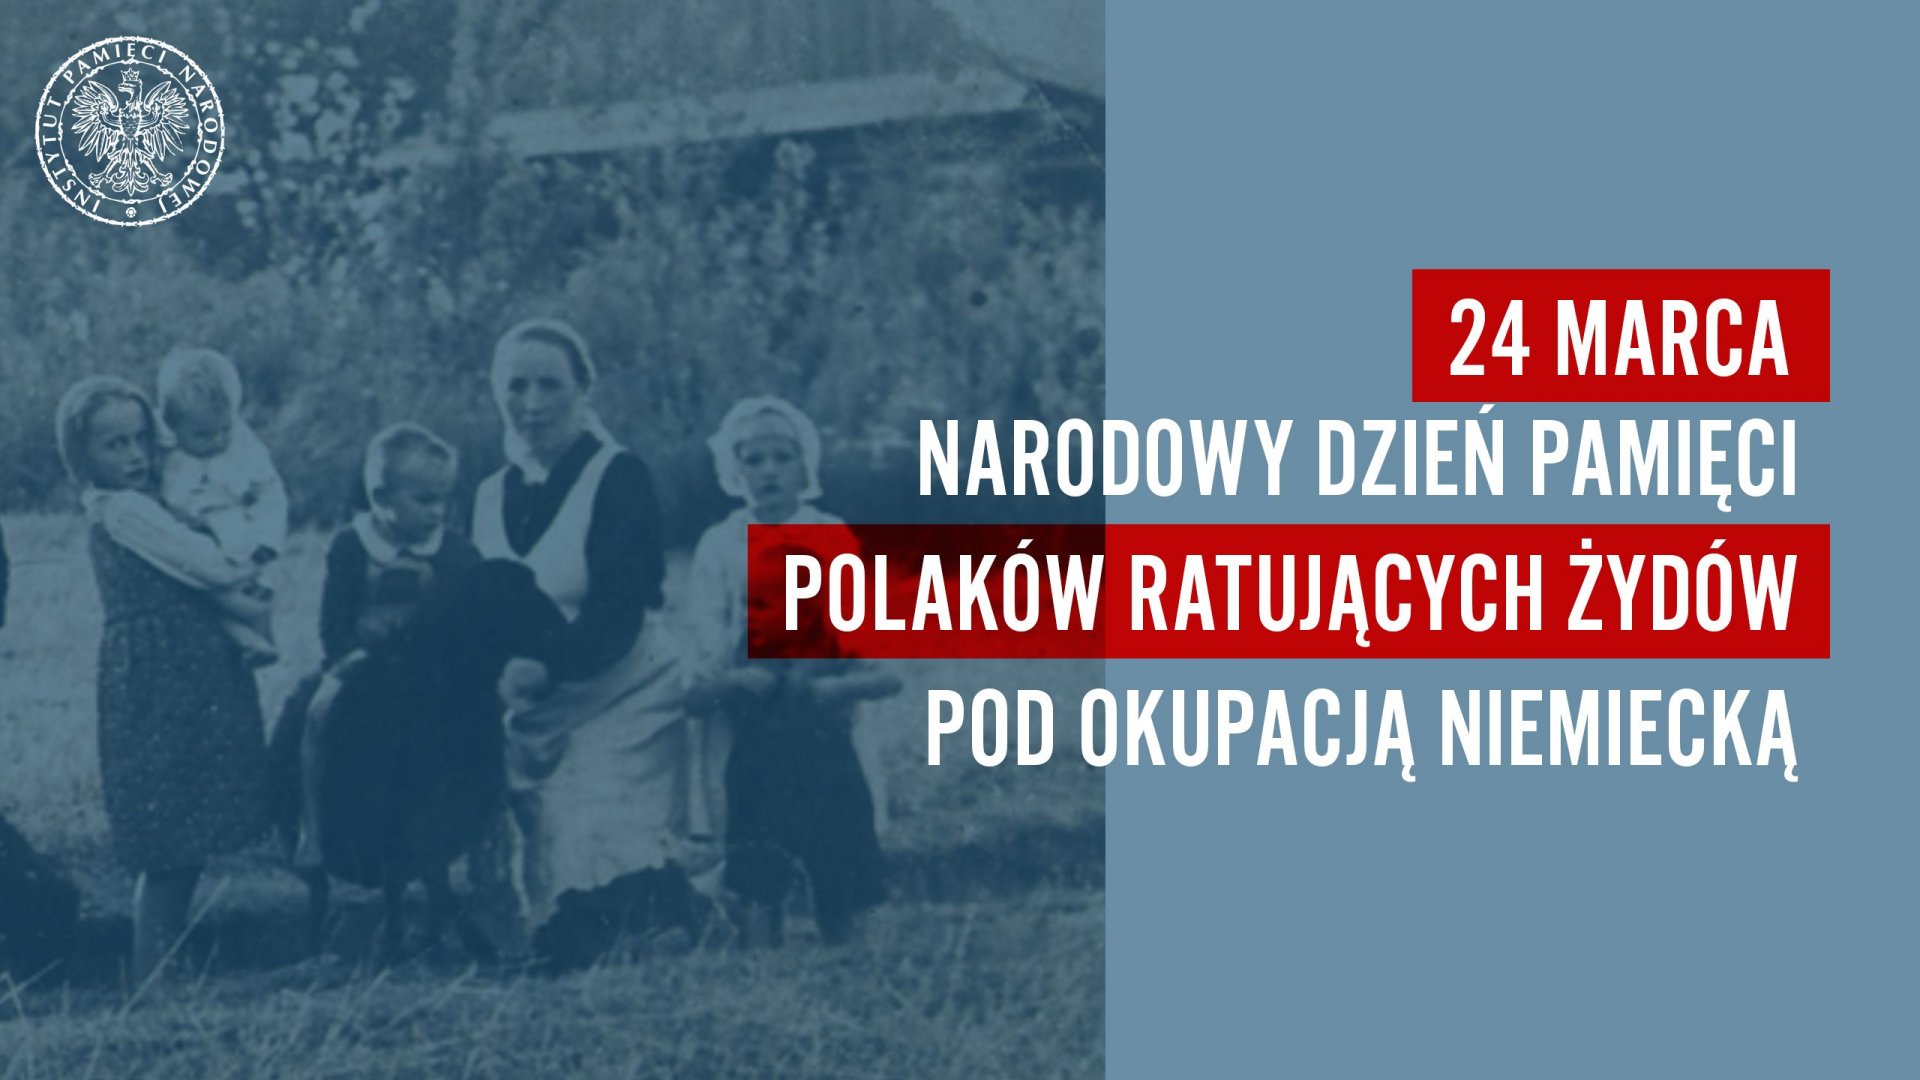 Plakat Instytutu Pamięci Narodowej - 24 Marca Narodowy Dzień Pamięci Polaków ratujących Żydów pod okupacją niemiecką